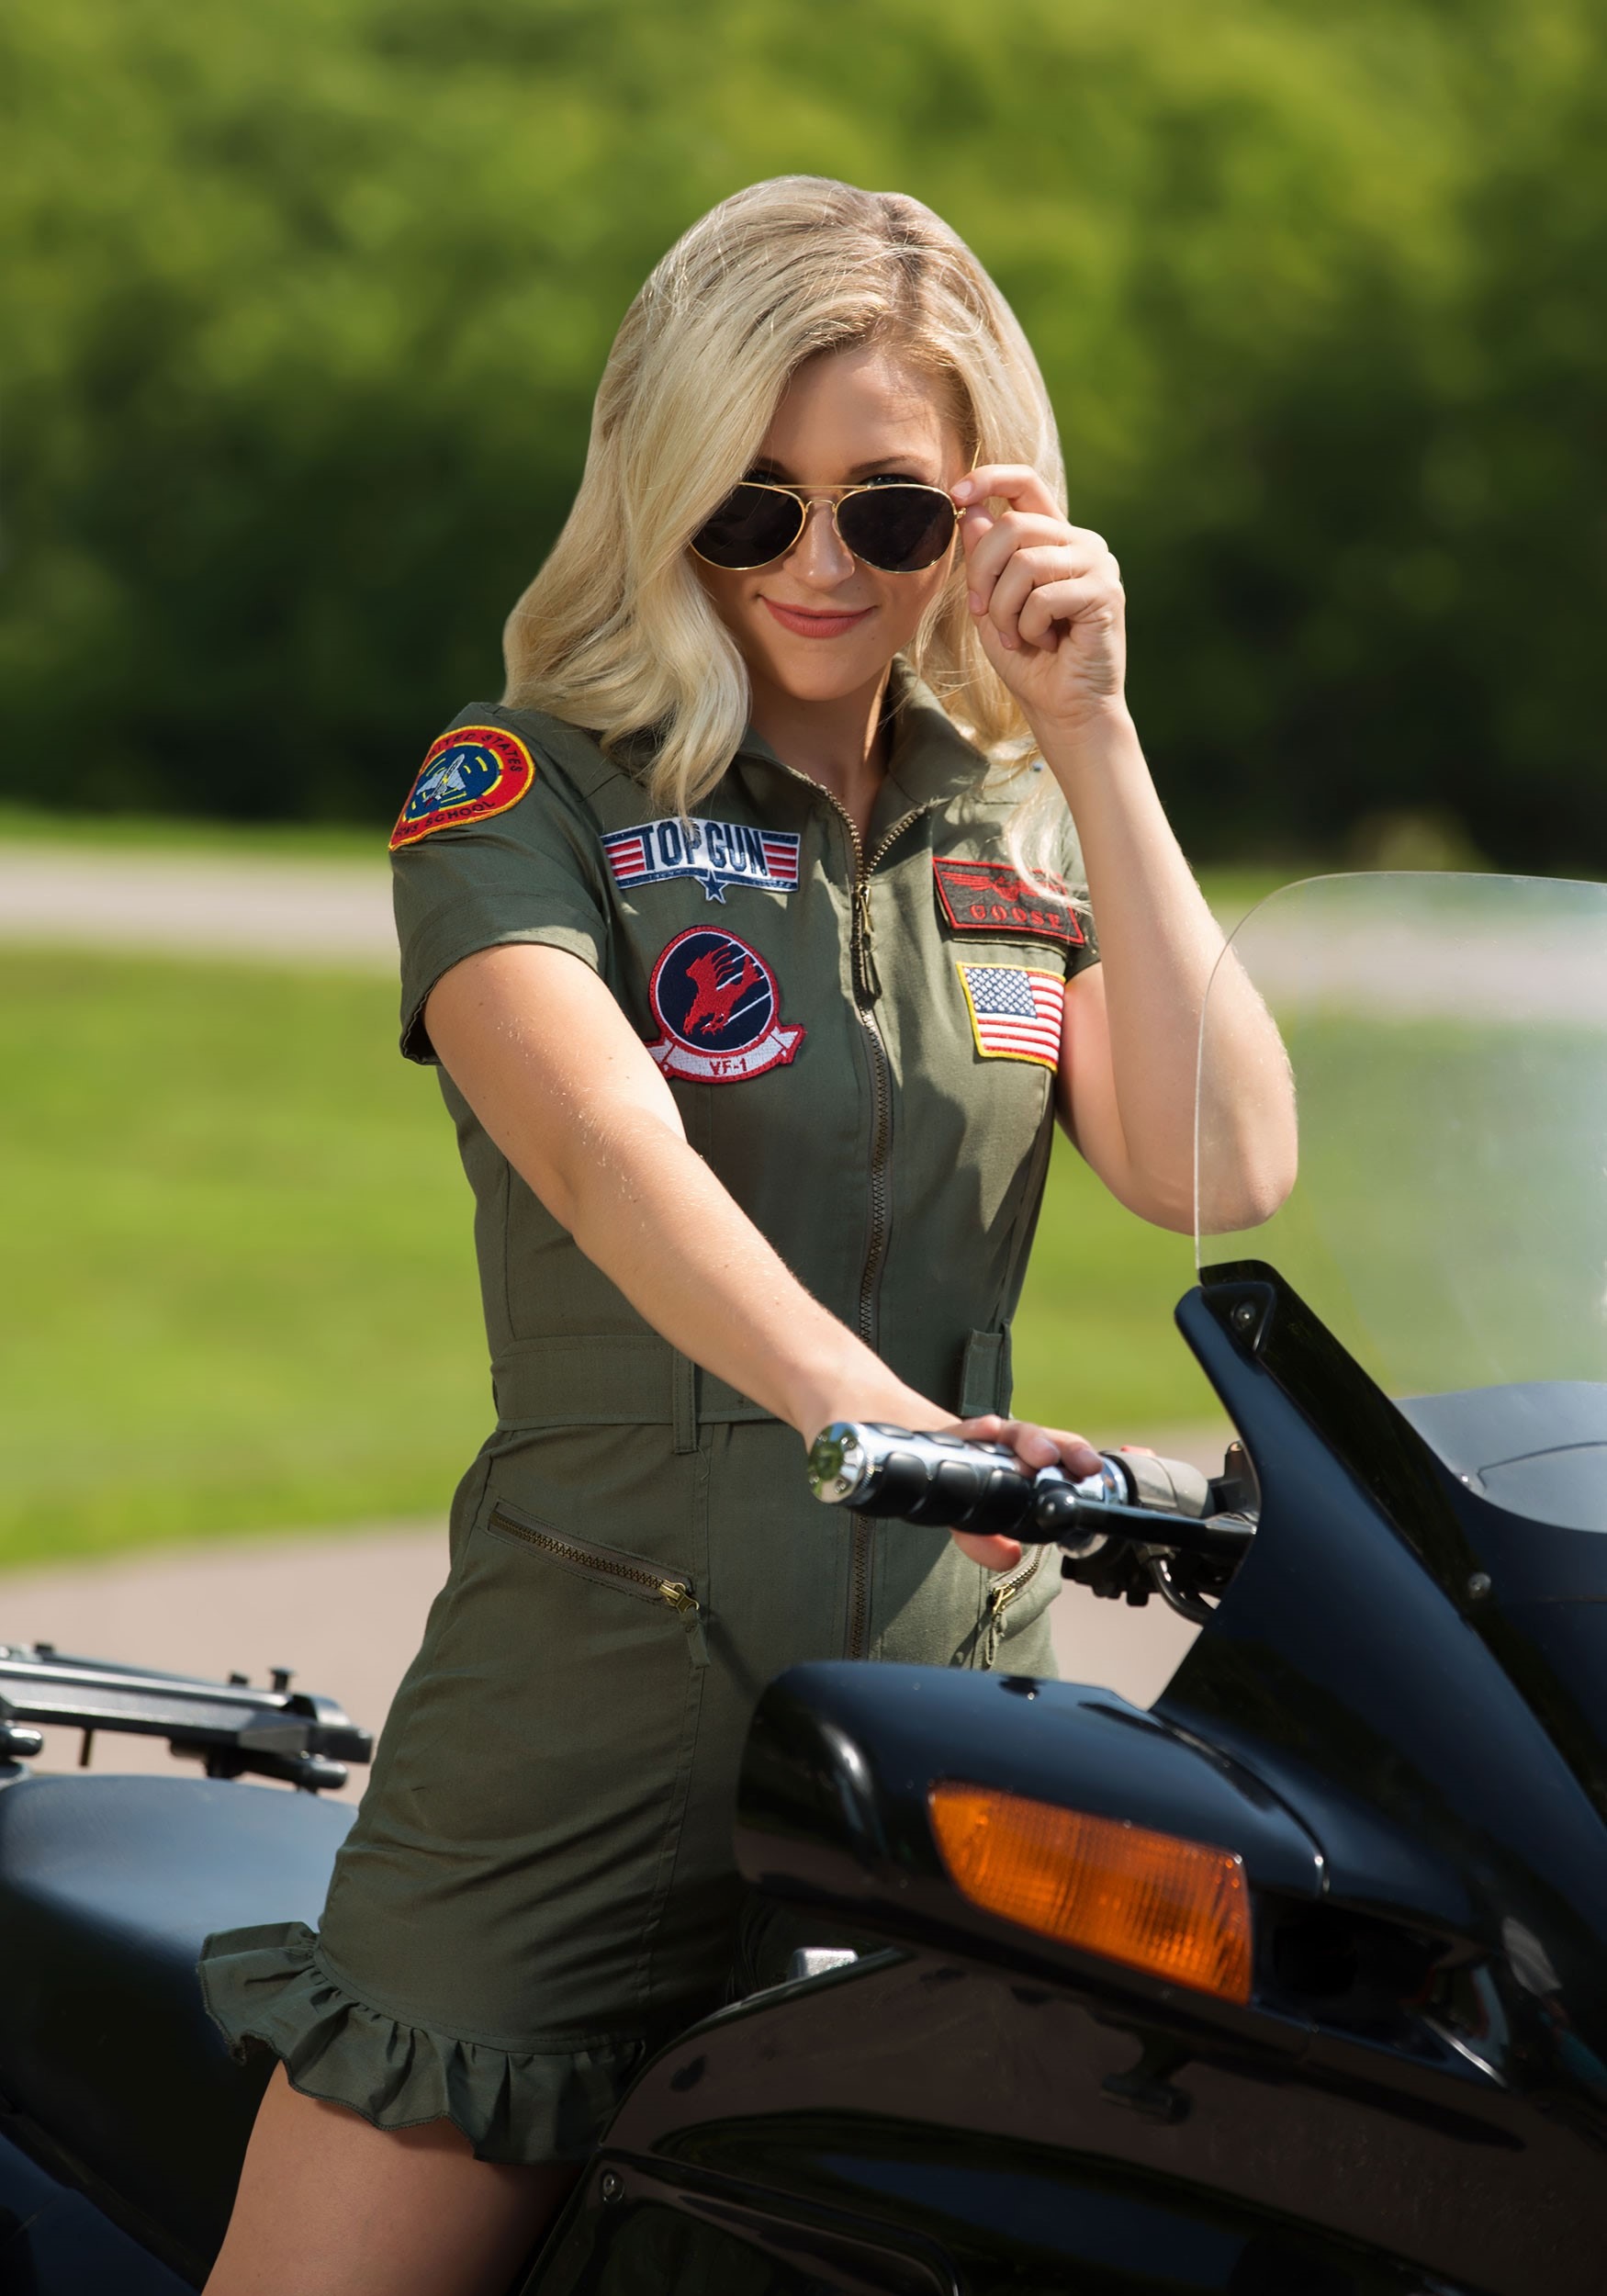 Top Gun Flight Dress Fancy Dress Costume